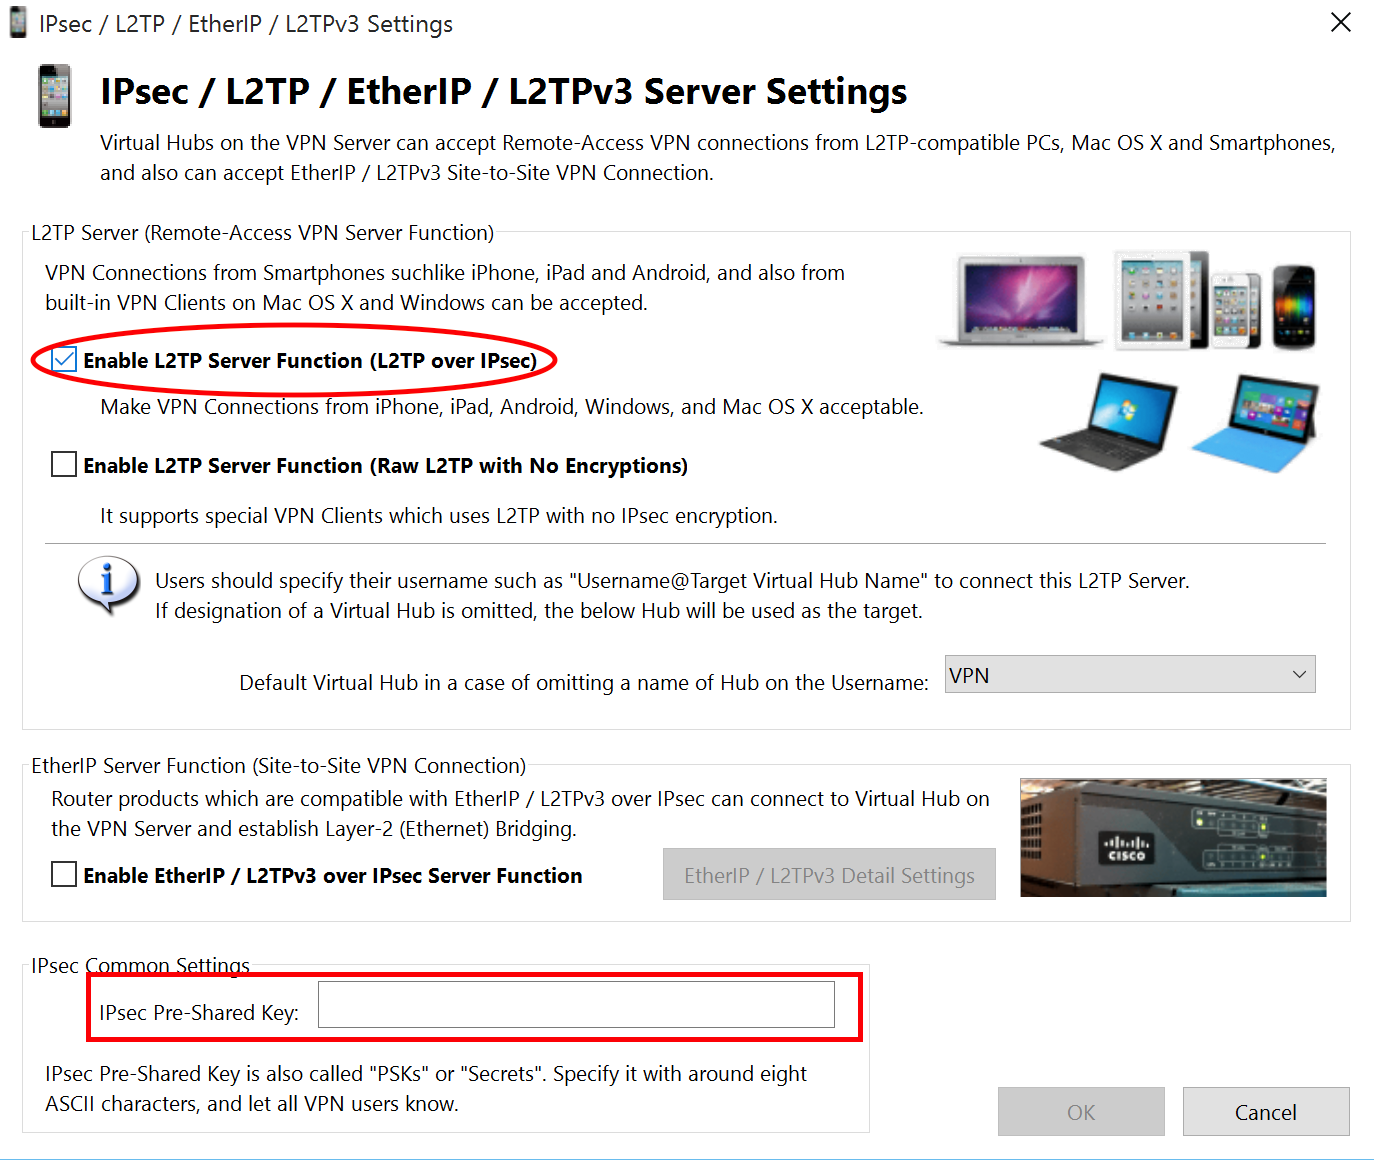 IPsec/L2TP/EtherIP/L2TPv3 Server Settings